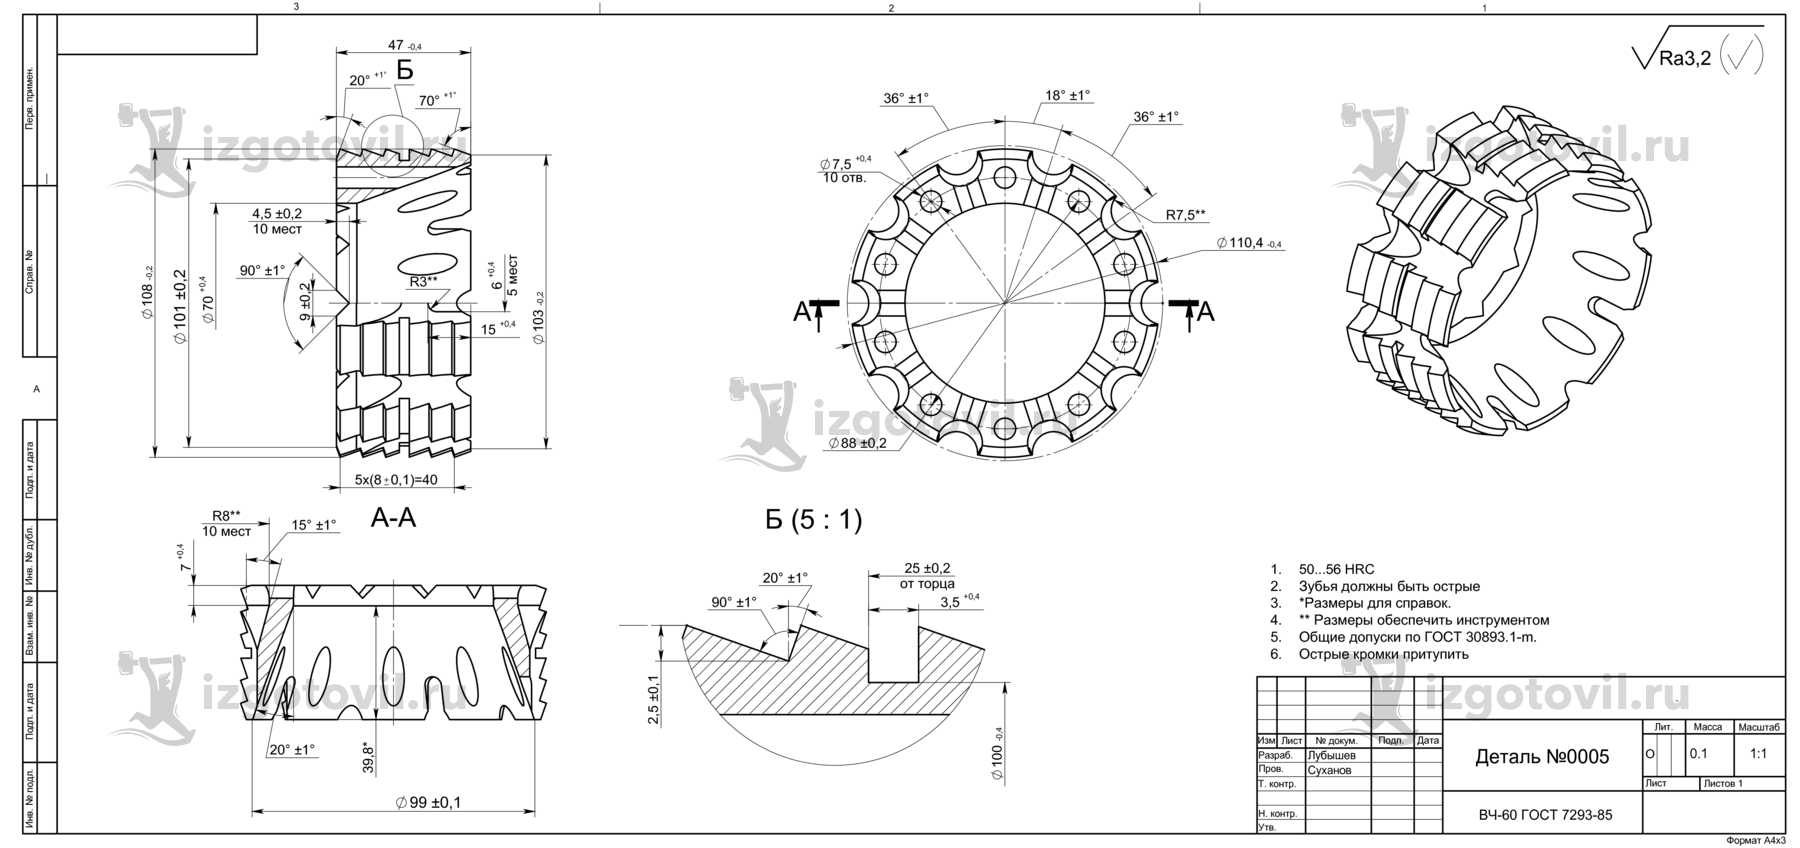 Токарная обработка деталей (круг ВЧ-60 ф120)